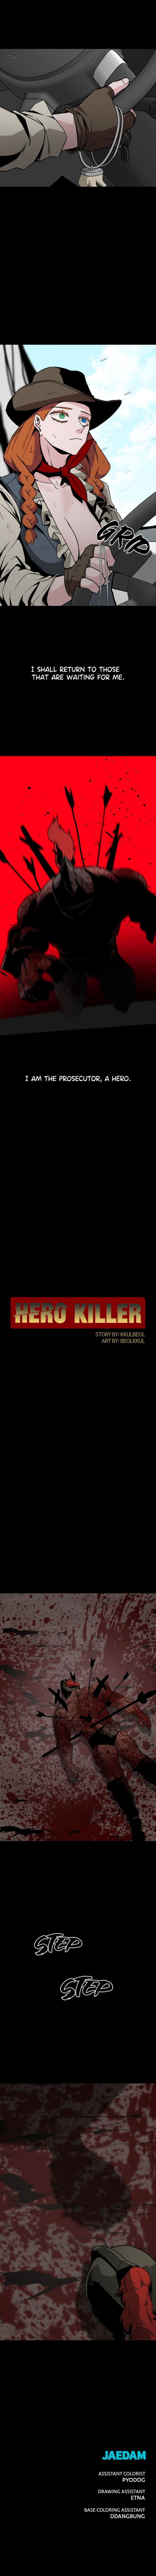 Hero Killer 74 10